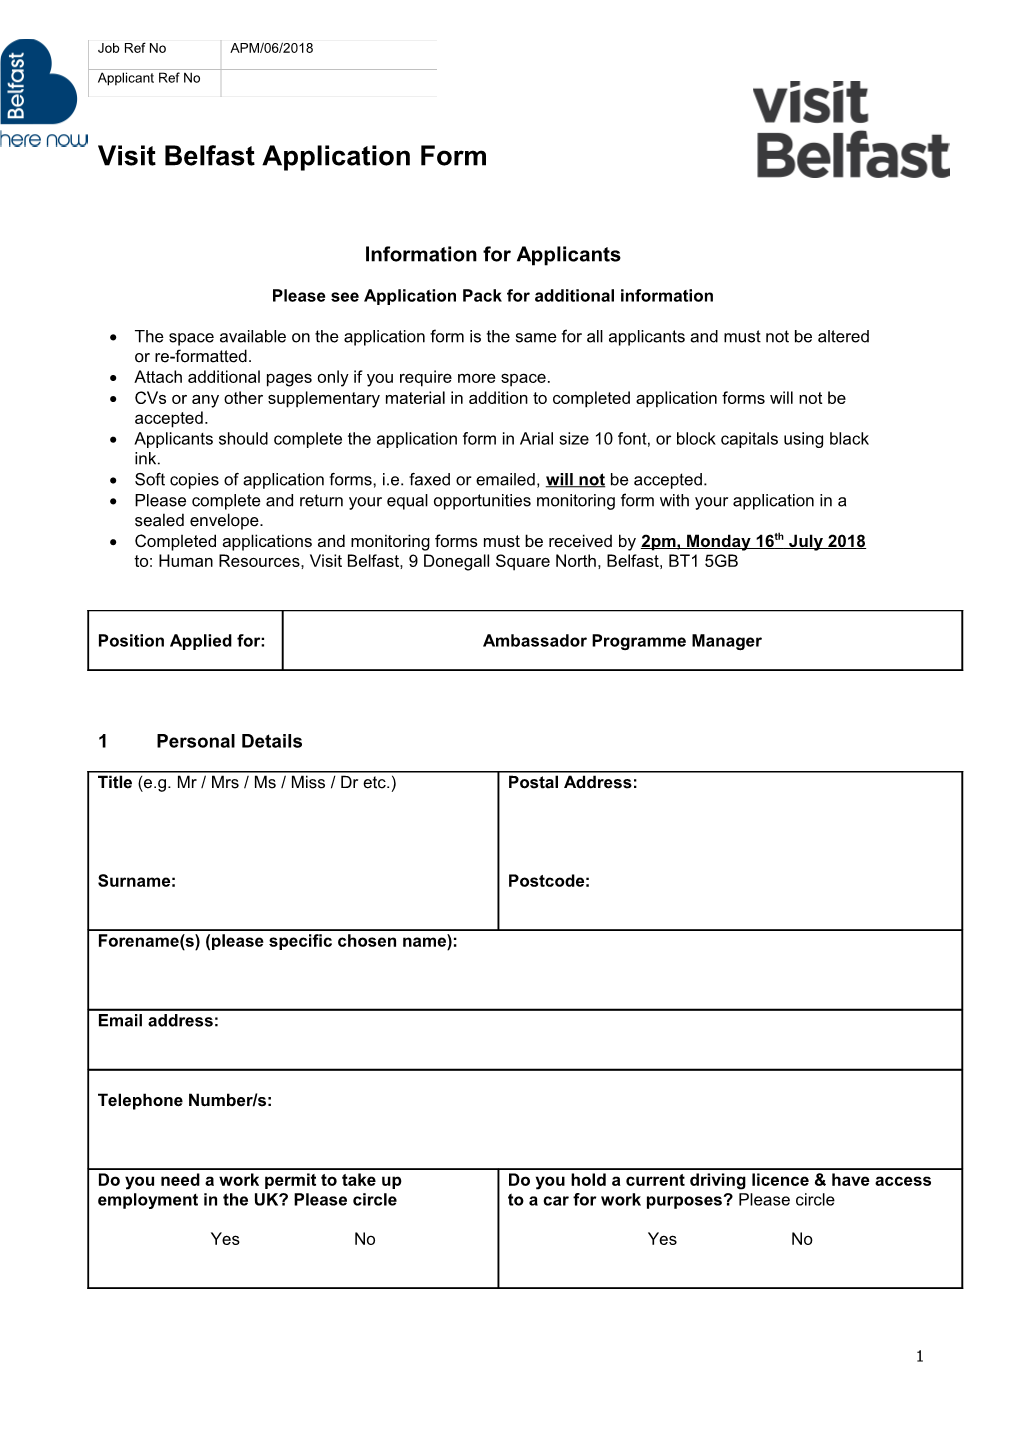 Visit Belfast Application Form